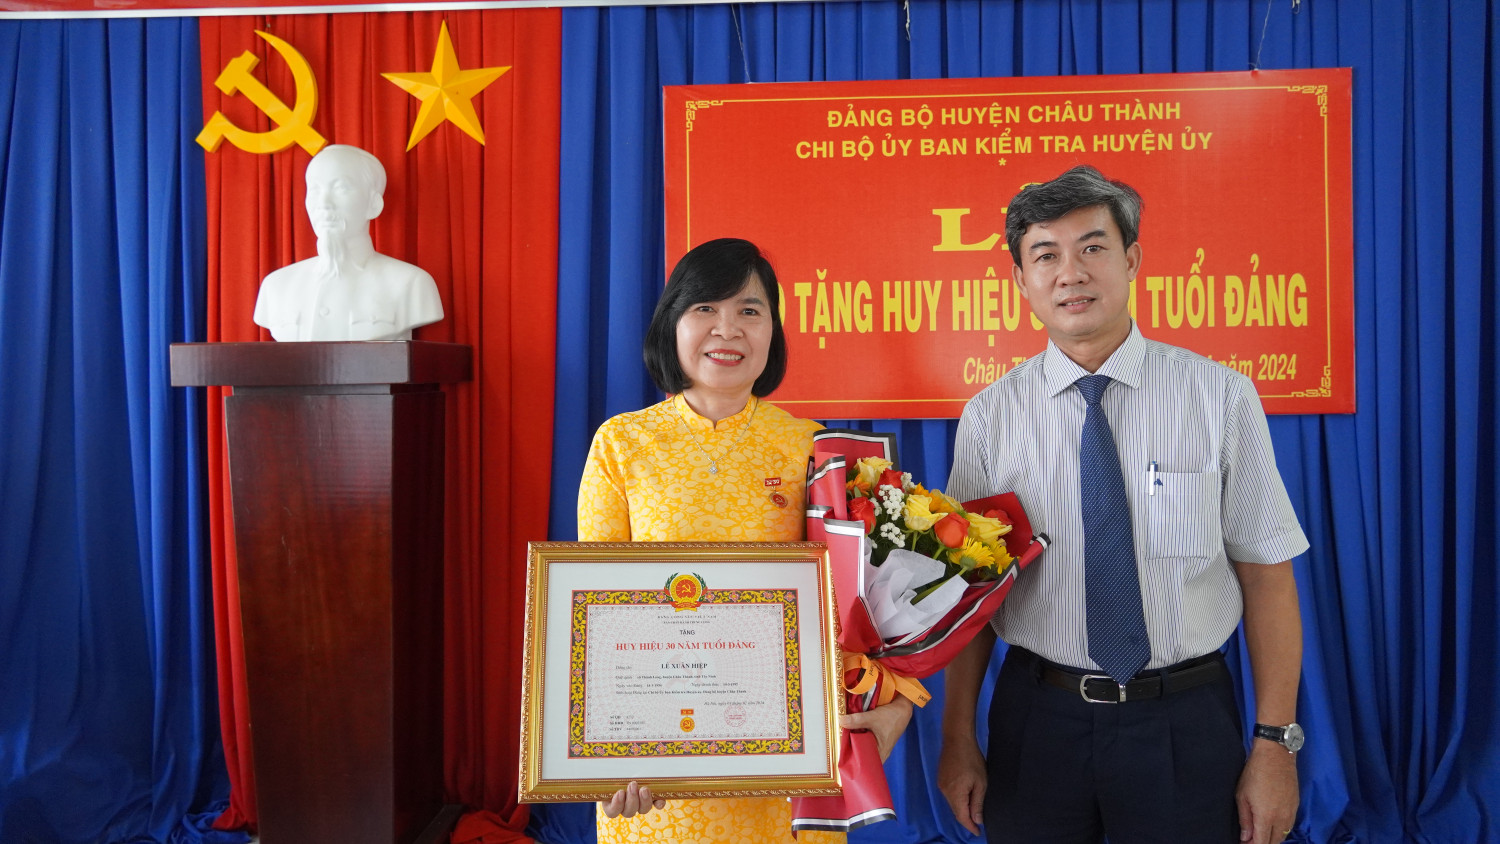 Bí thư Huyện ủy Châu Thành, Trương Văn Hoàn: Trao huy hiệu 30 năm tuổi đảng cho Chủ nhiệm UBKT Huyện ủy